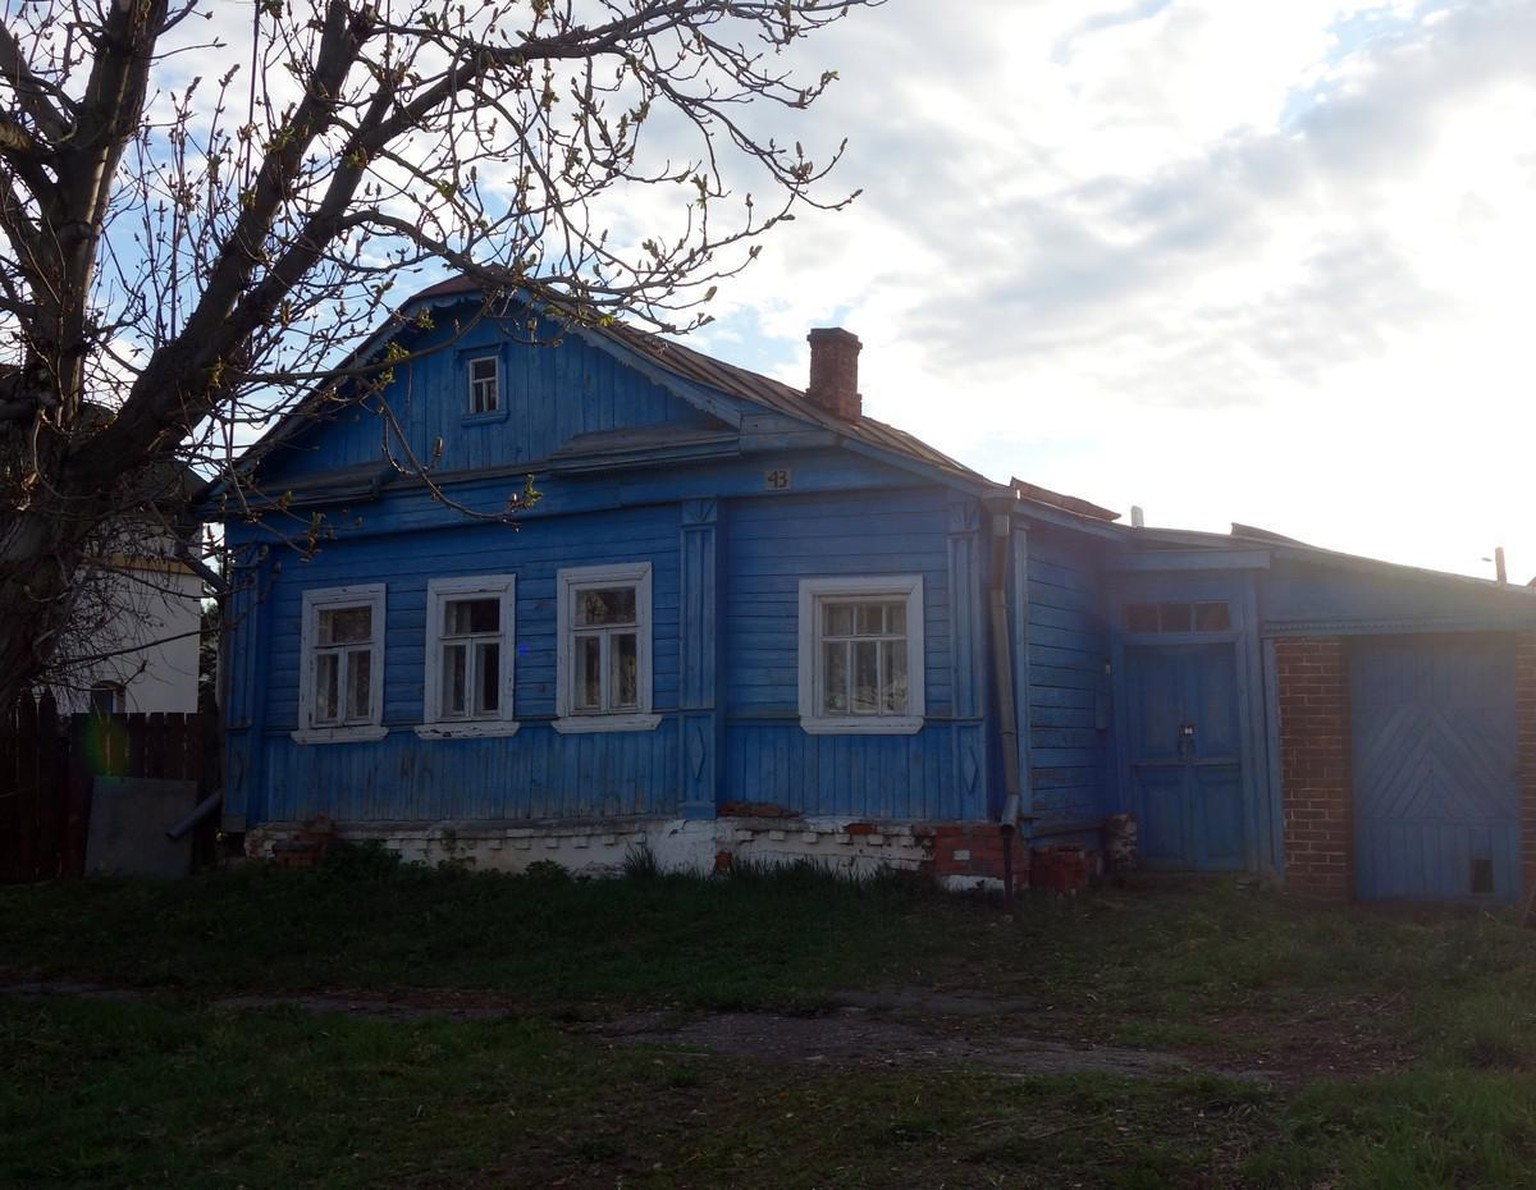 Die demografische Krise trifft die eher ältere ländliche Bevölkerung härter als die urbanen Zentren. In russischen Dörfern gibt es viele verfallene Häuser.  